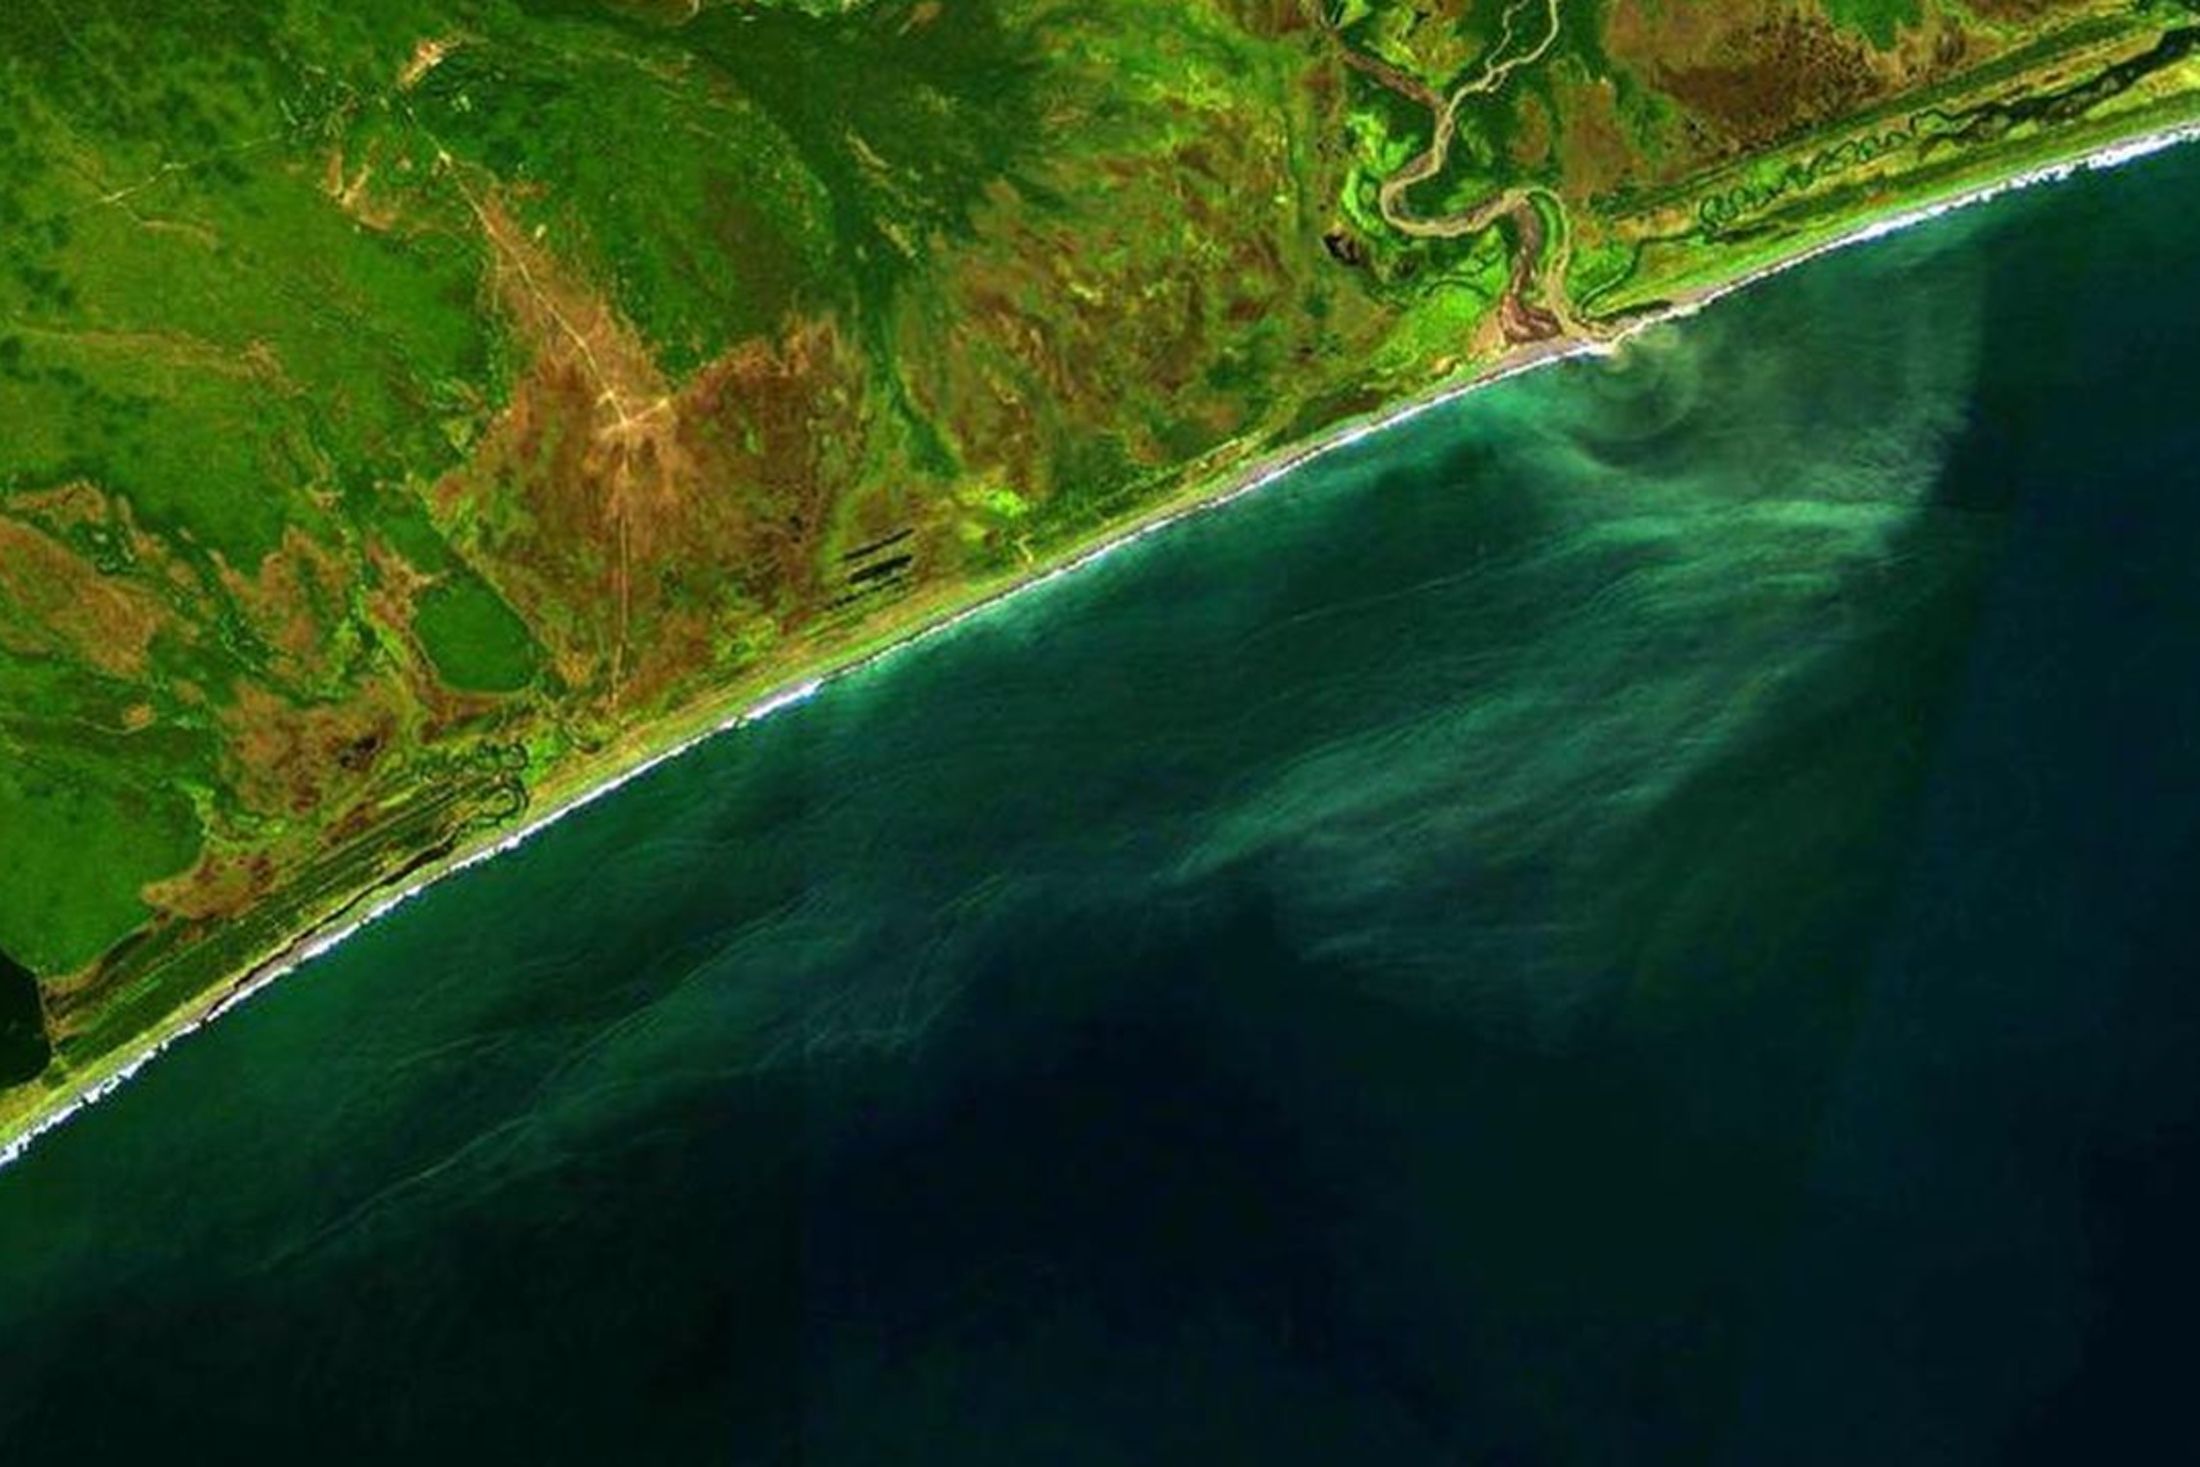 фото океана со спутника